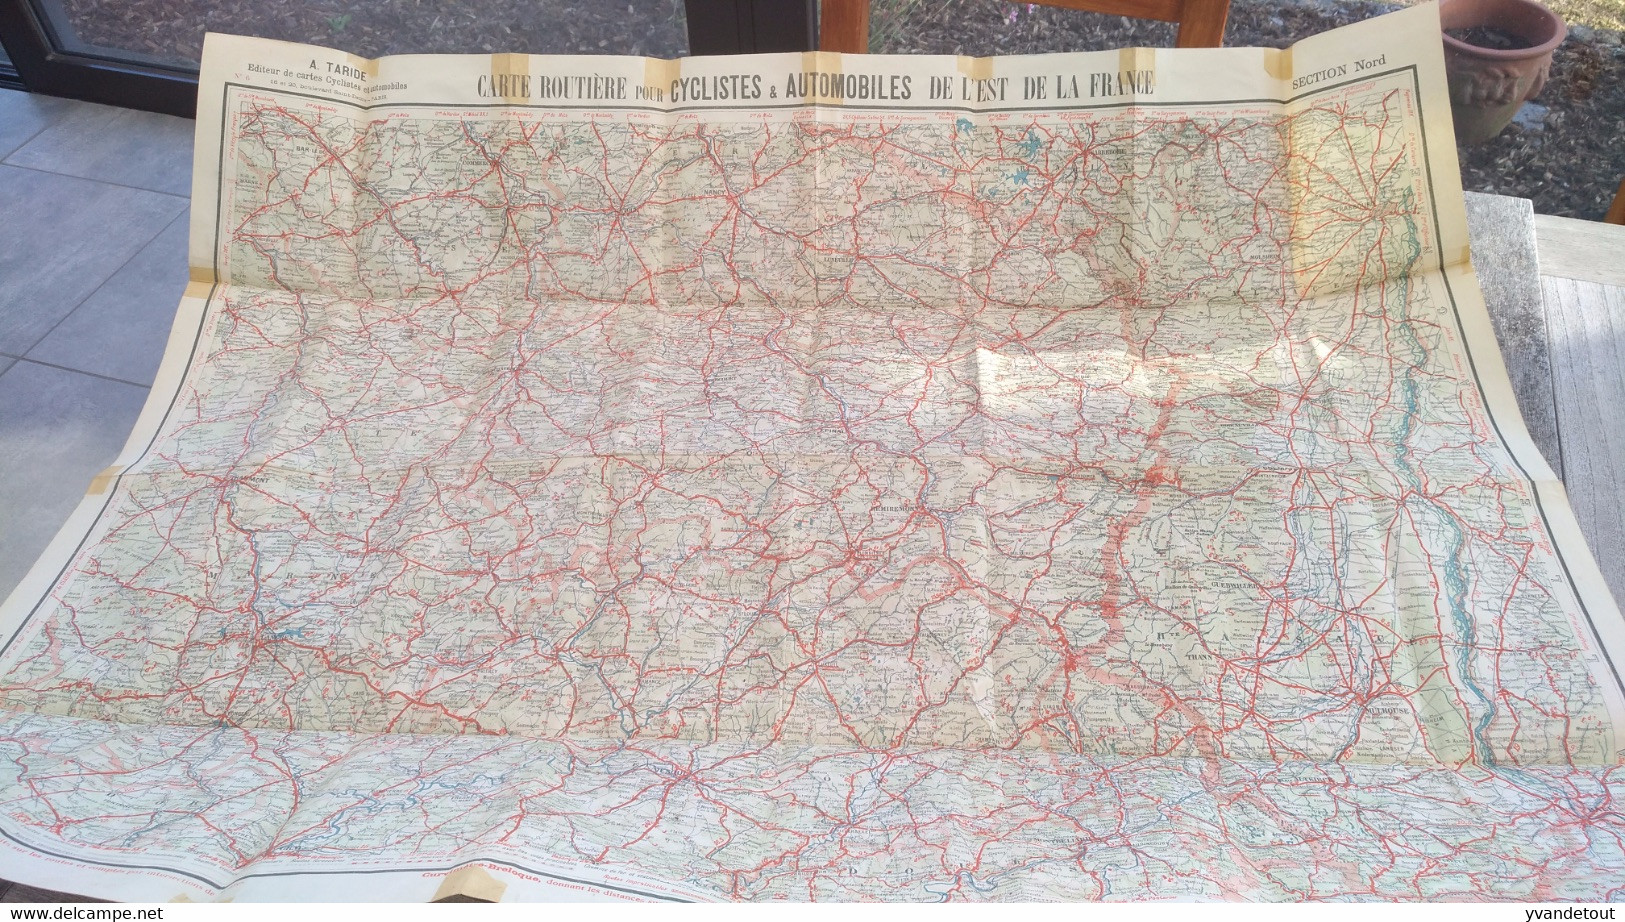 Carte Taride Papier. Carte Routière Pour Cyclistes & Automobiles . Section Nord De La France - Carte Stradali